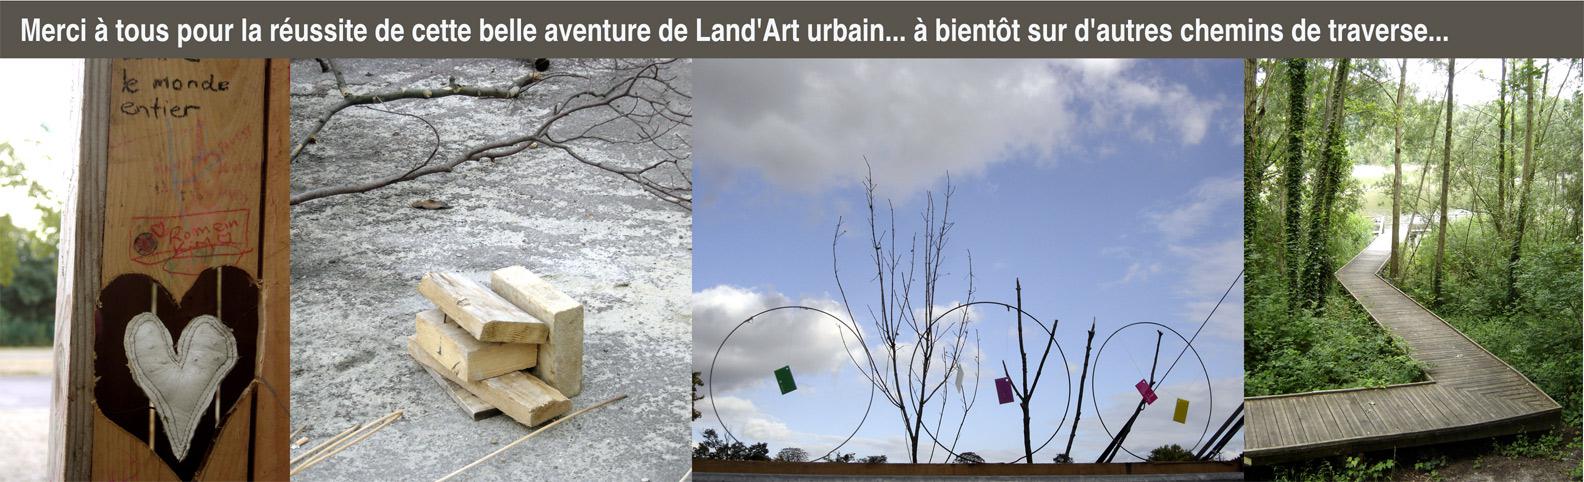 land art urbain à paris initié par Paris Label, paule kingleur, coop 2r2c et artistes associés